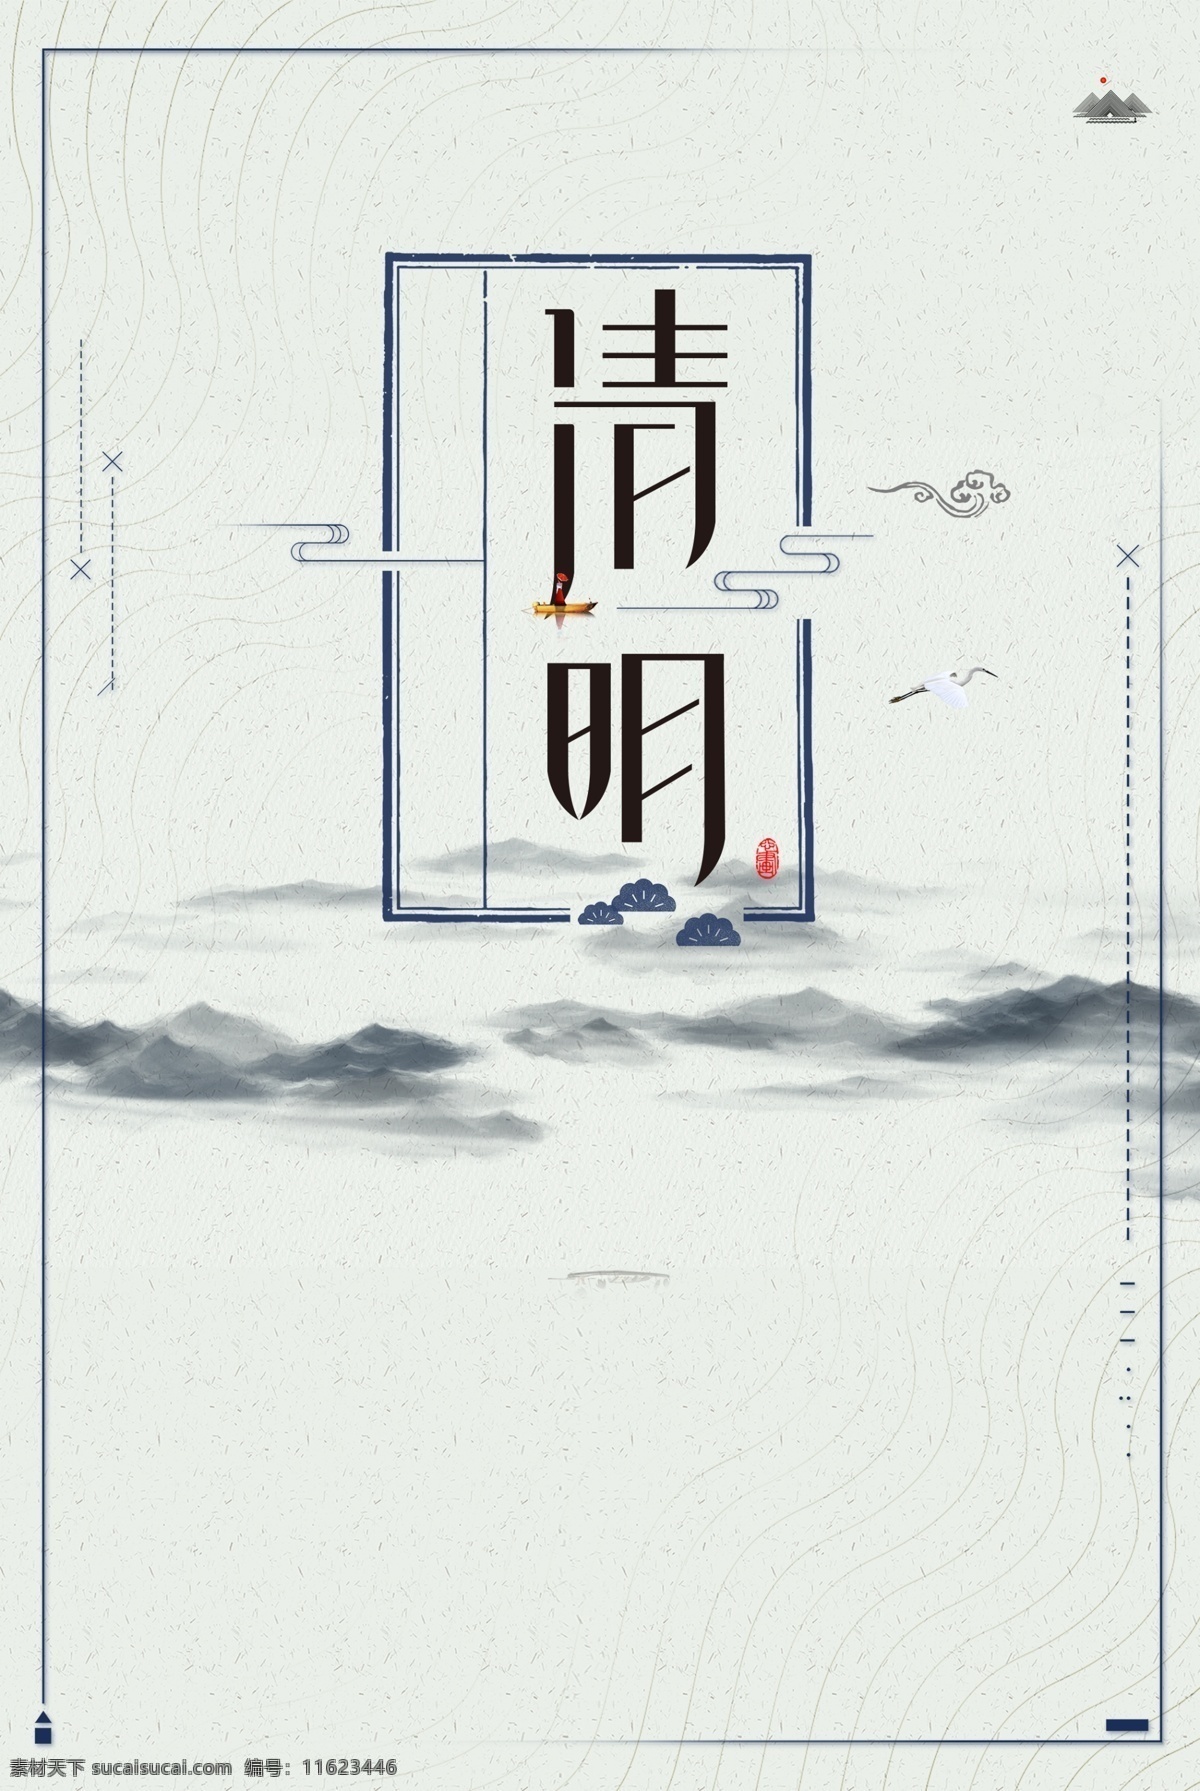 中国 风 清明节 创意 海报 雨伞 清明 春天来了 春季 传统文化 24节气 雨水展板 二十四节气 农历节气 春天到了 节气文化